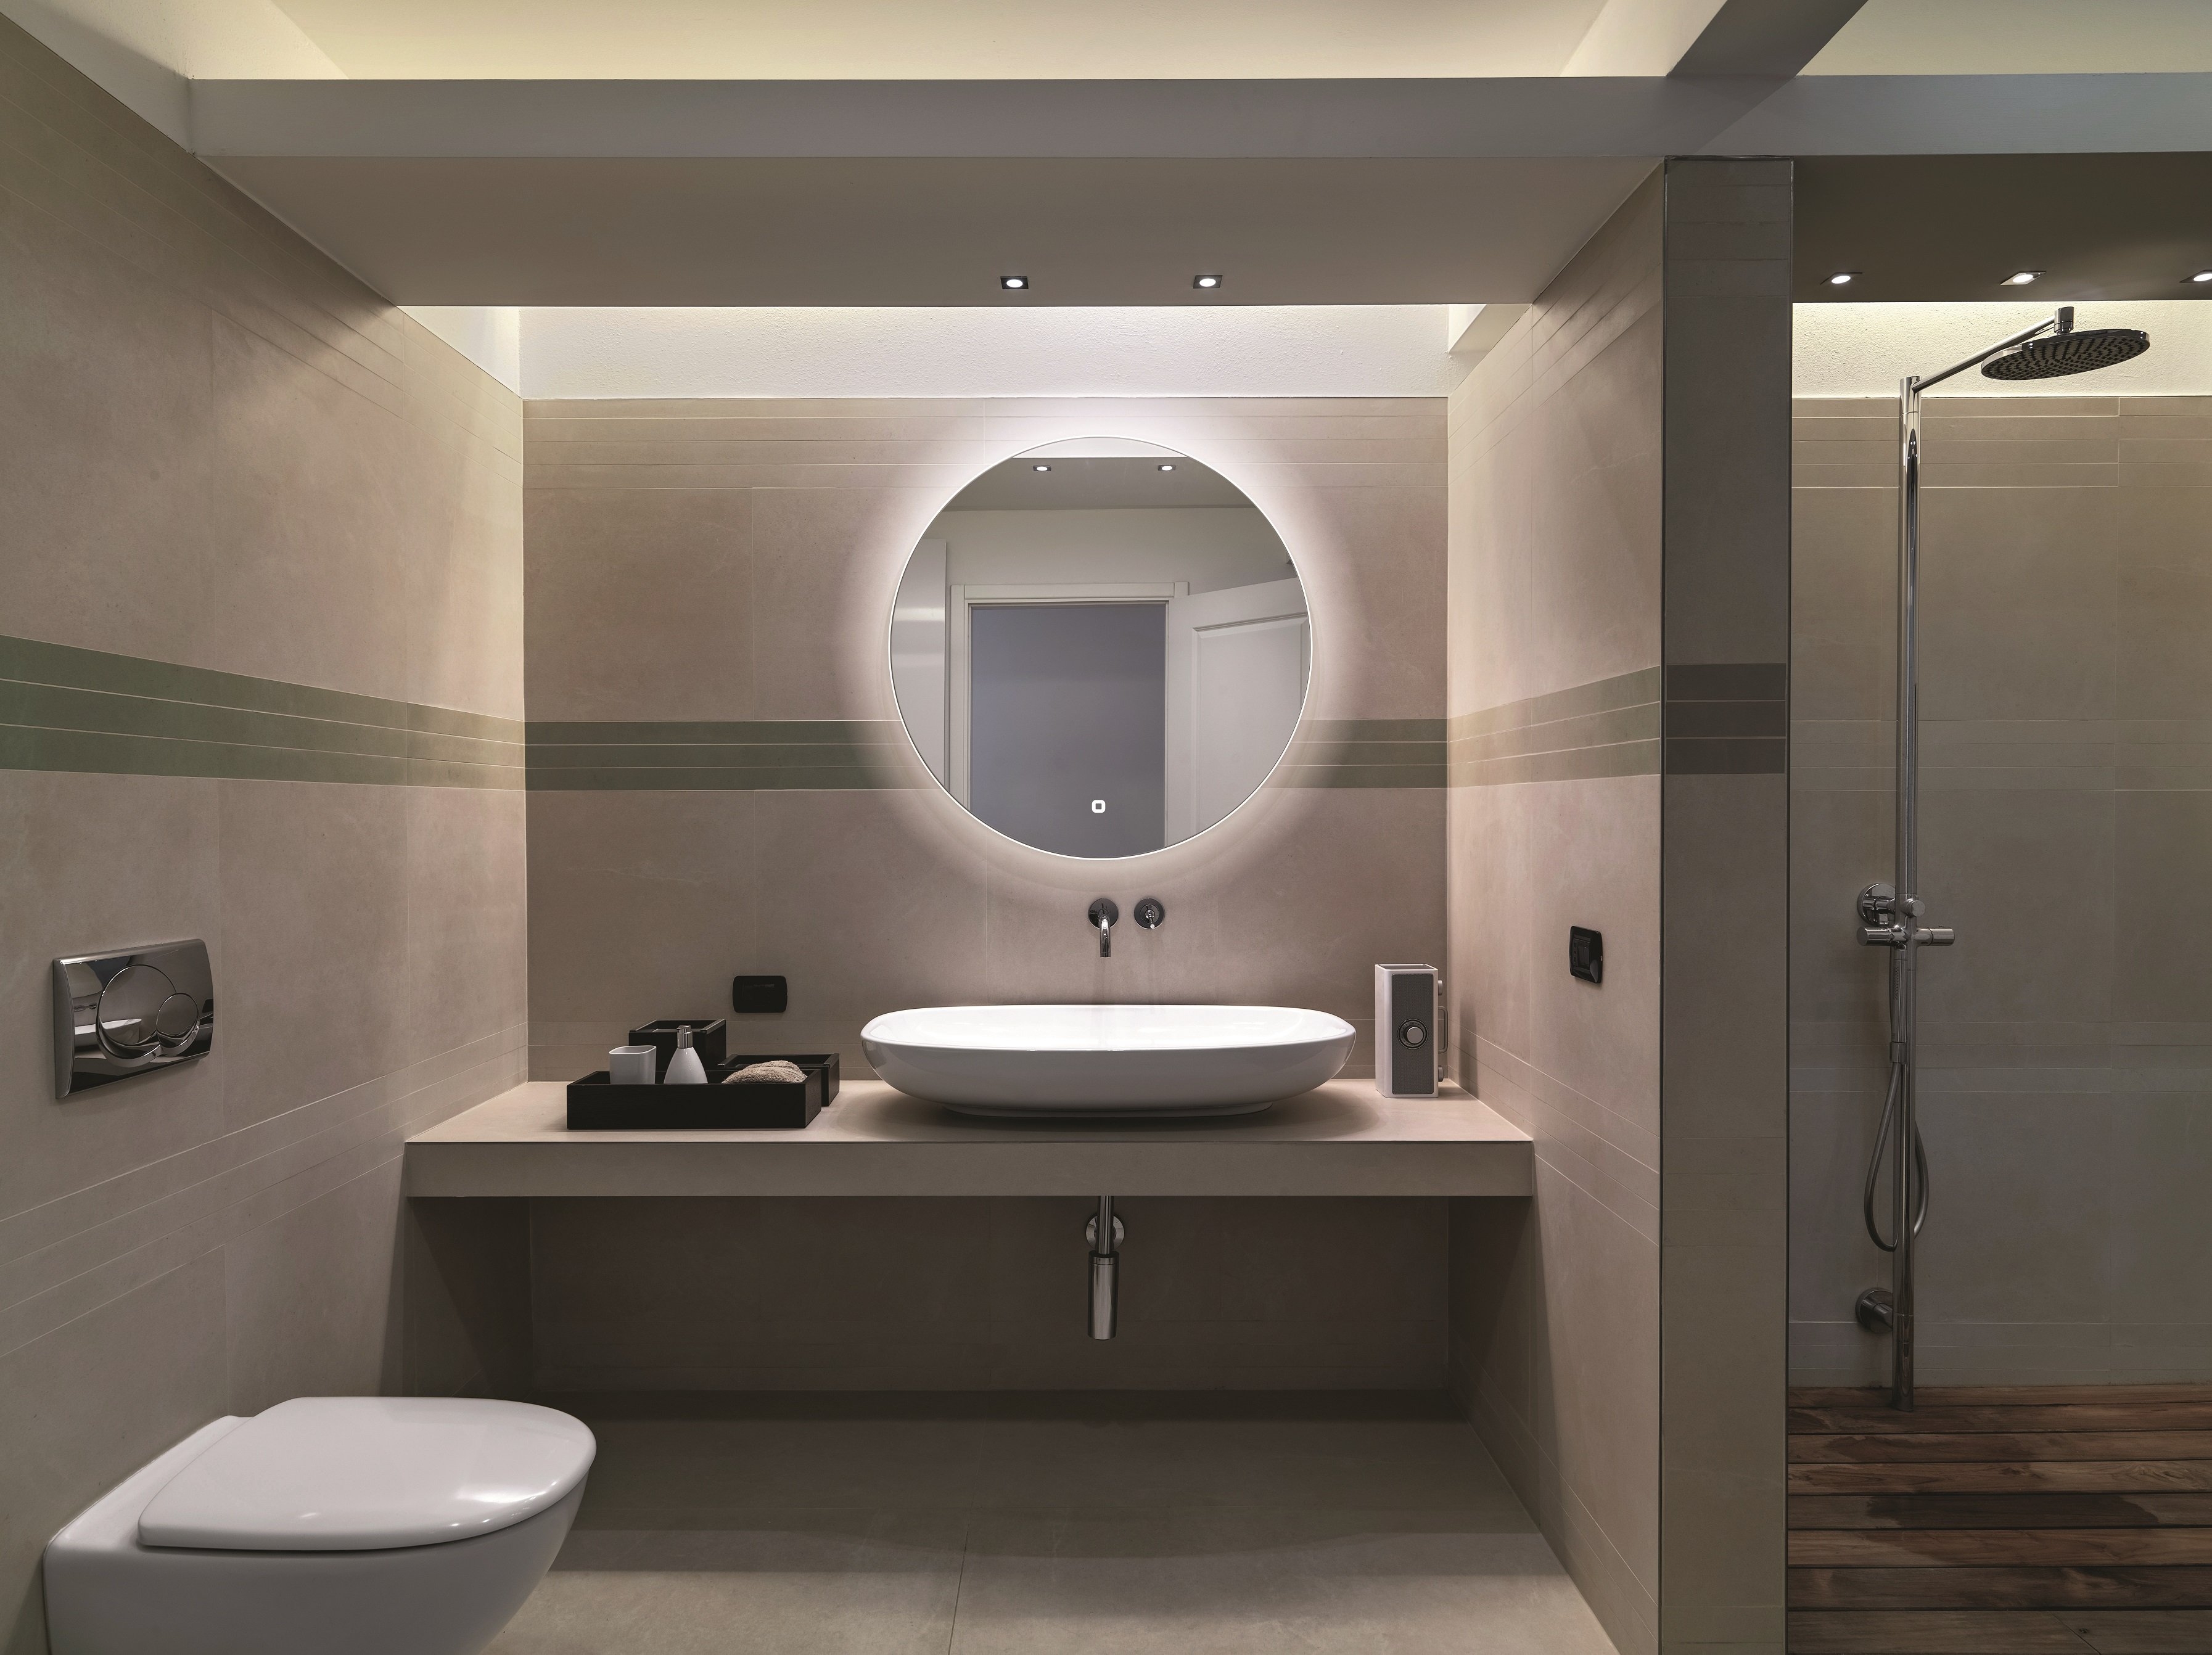 HiB Theme – Round Circular LED Illuminated Bathroom Mirror – Theme 80: Ø80 x D4cm – HiB LED Illuminated Bathroom Mirrors – Stylishly Sophisticated